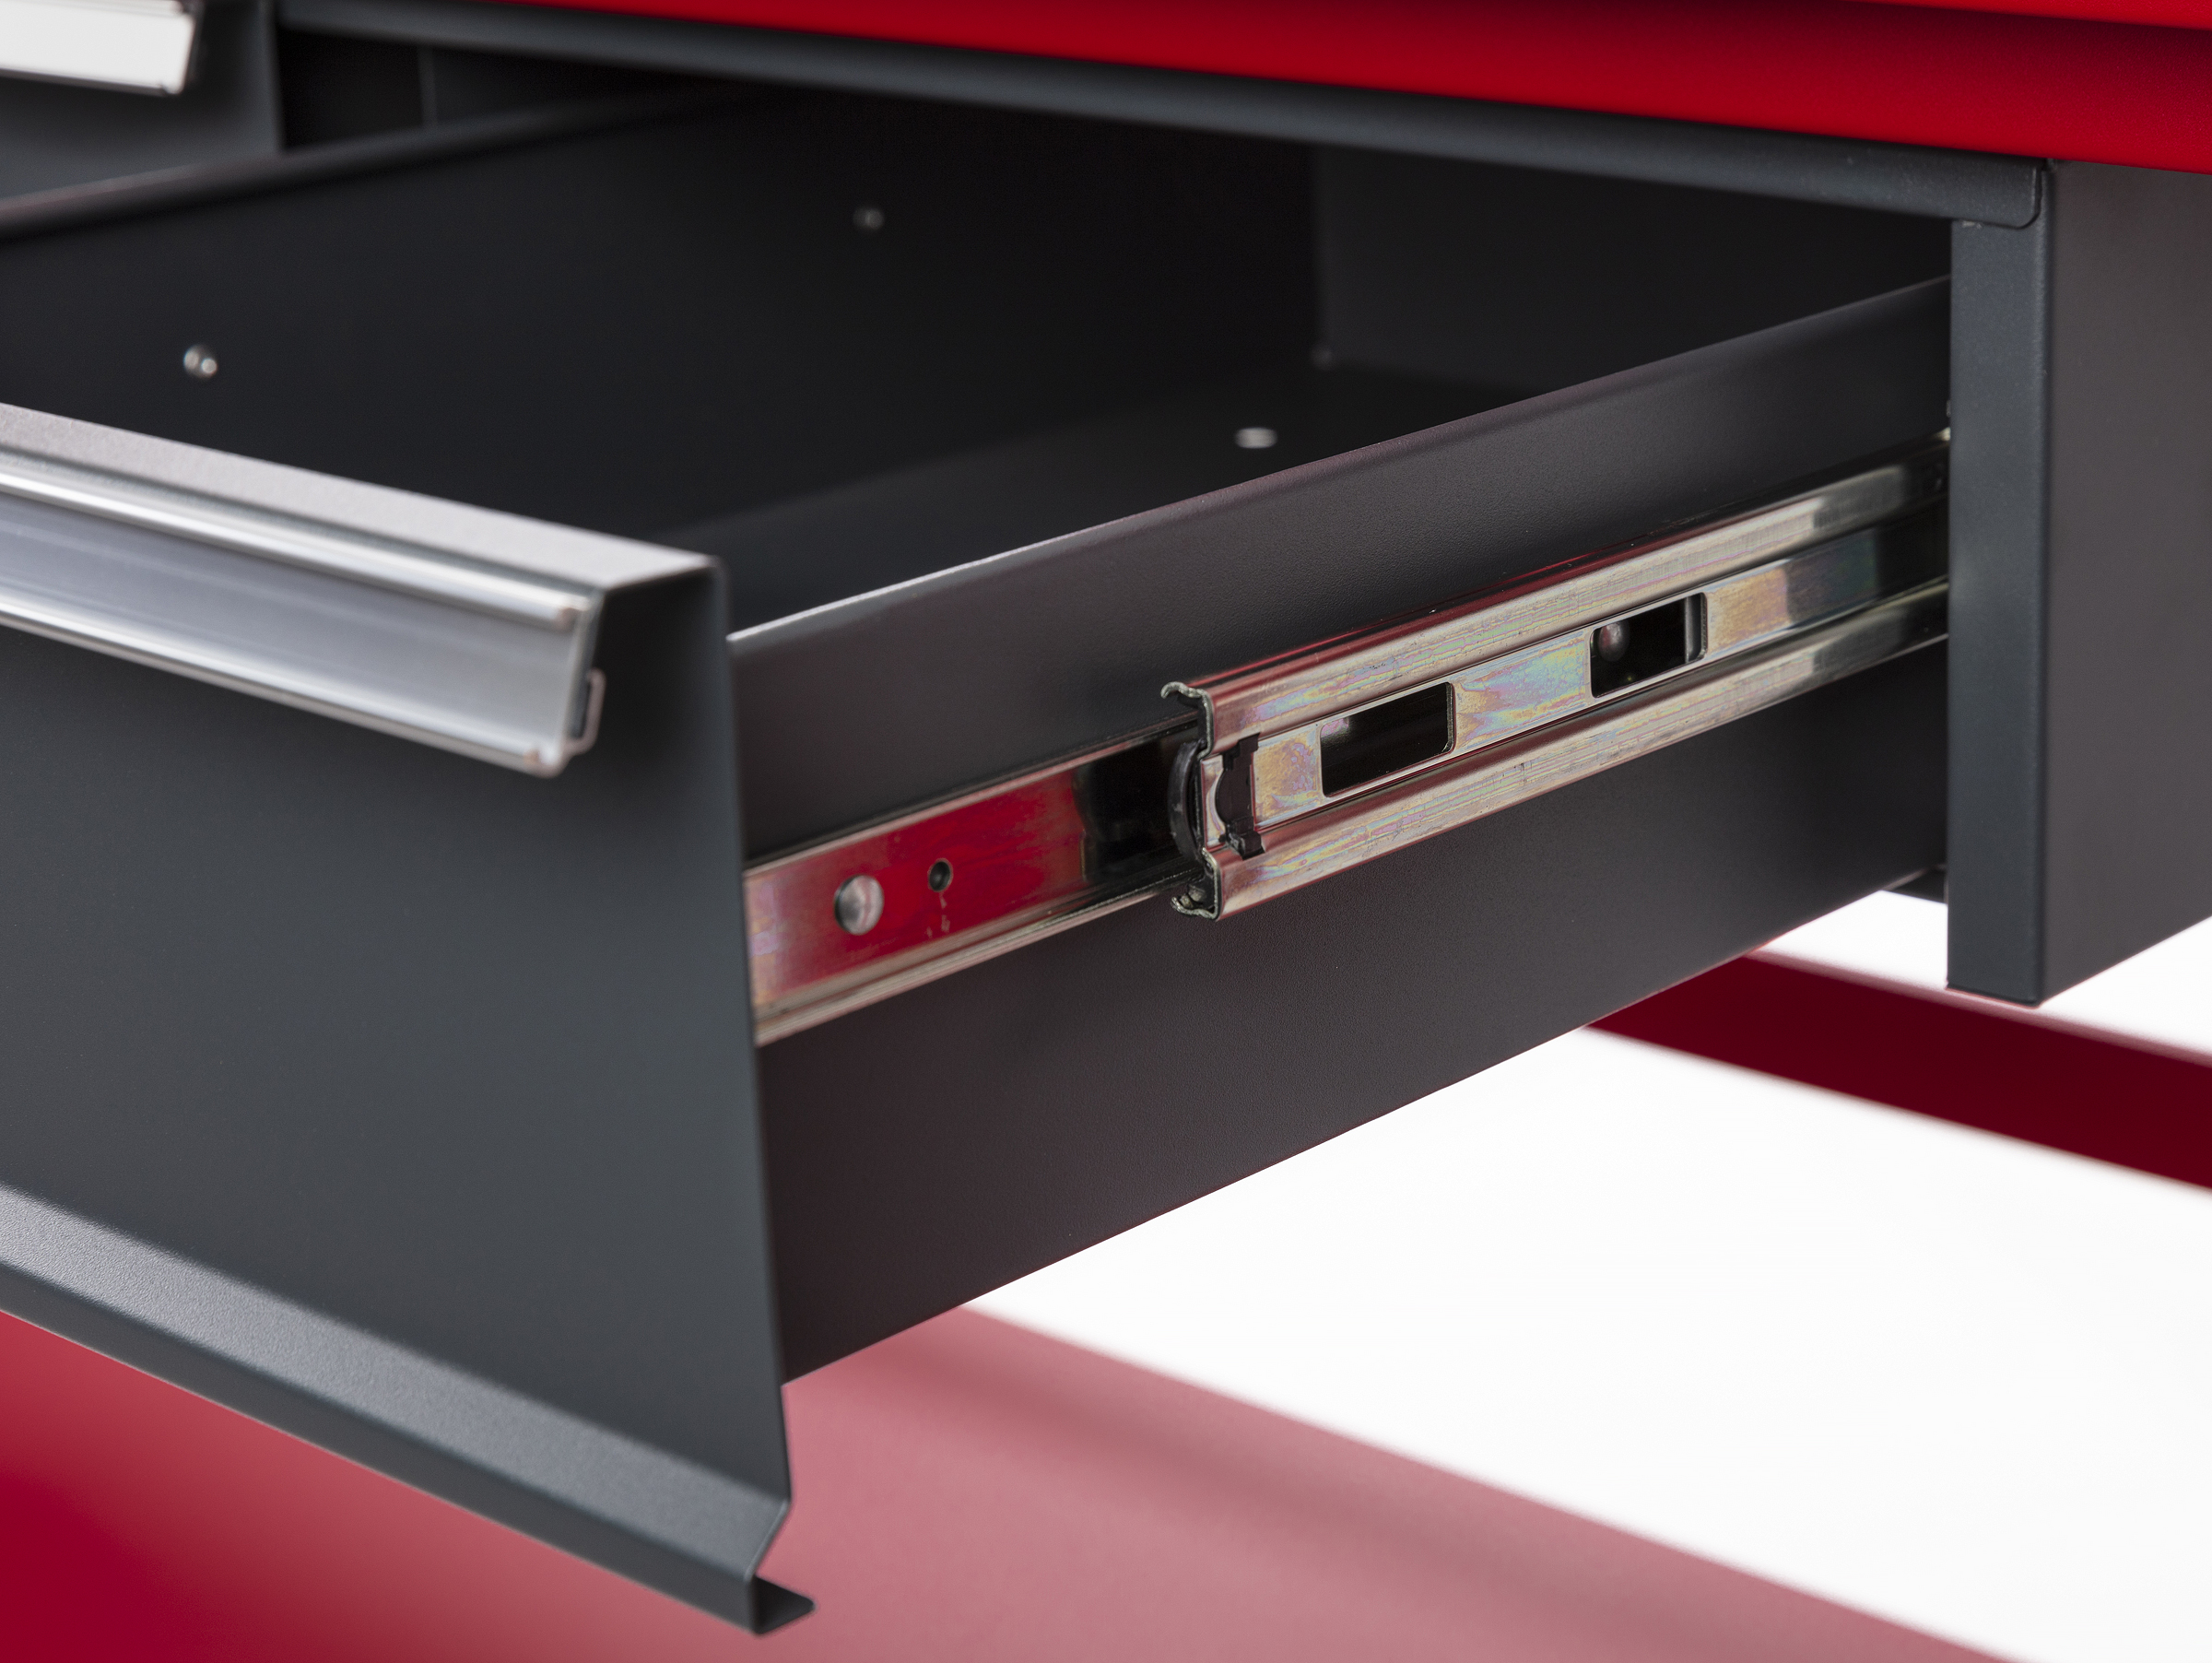 Buy Work bench, set of drawers & shelf at Pela Tools